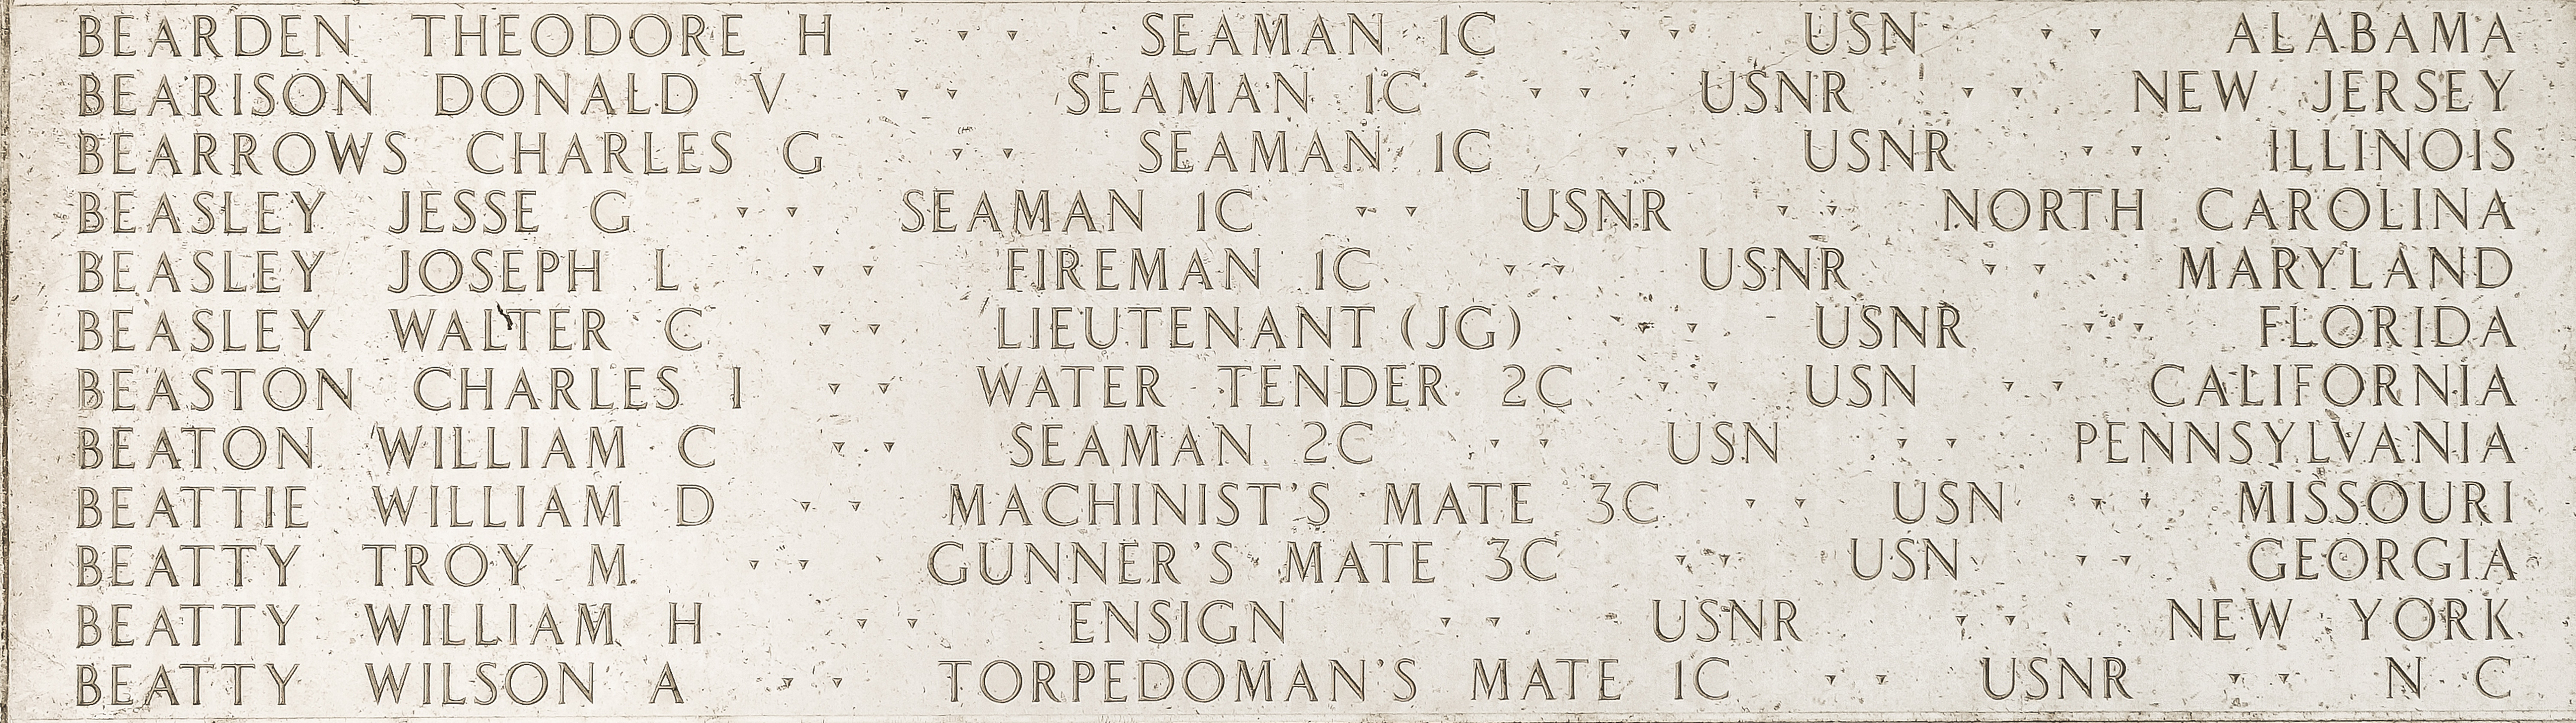 Donald V. Bearison, Seaman First Class